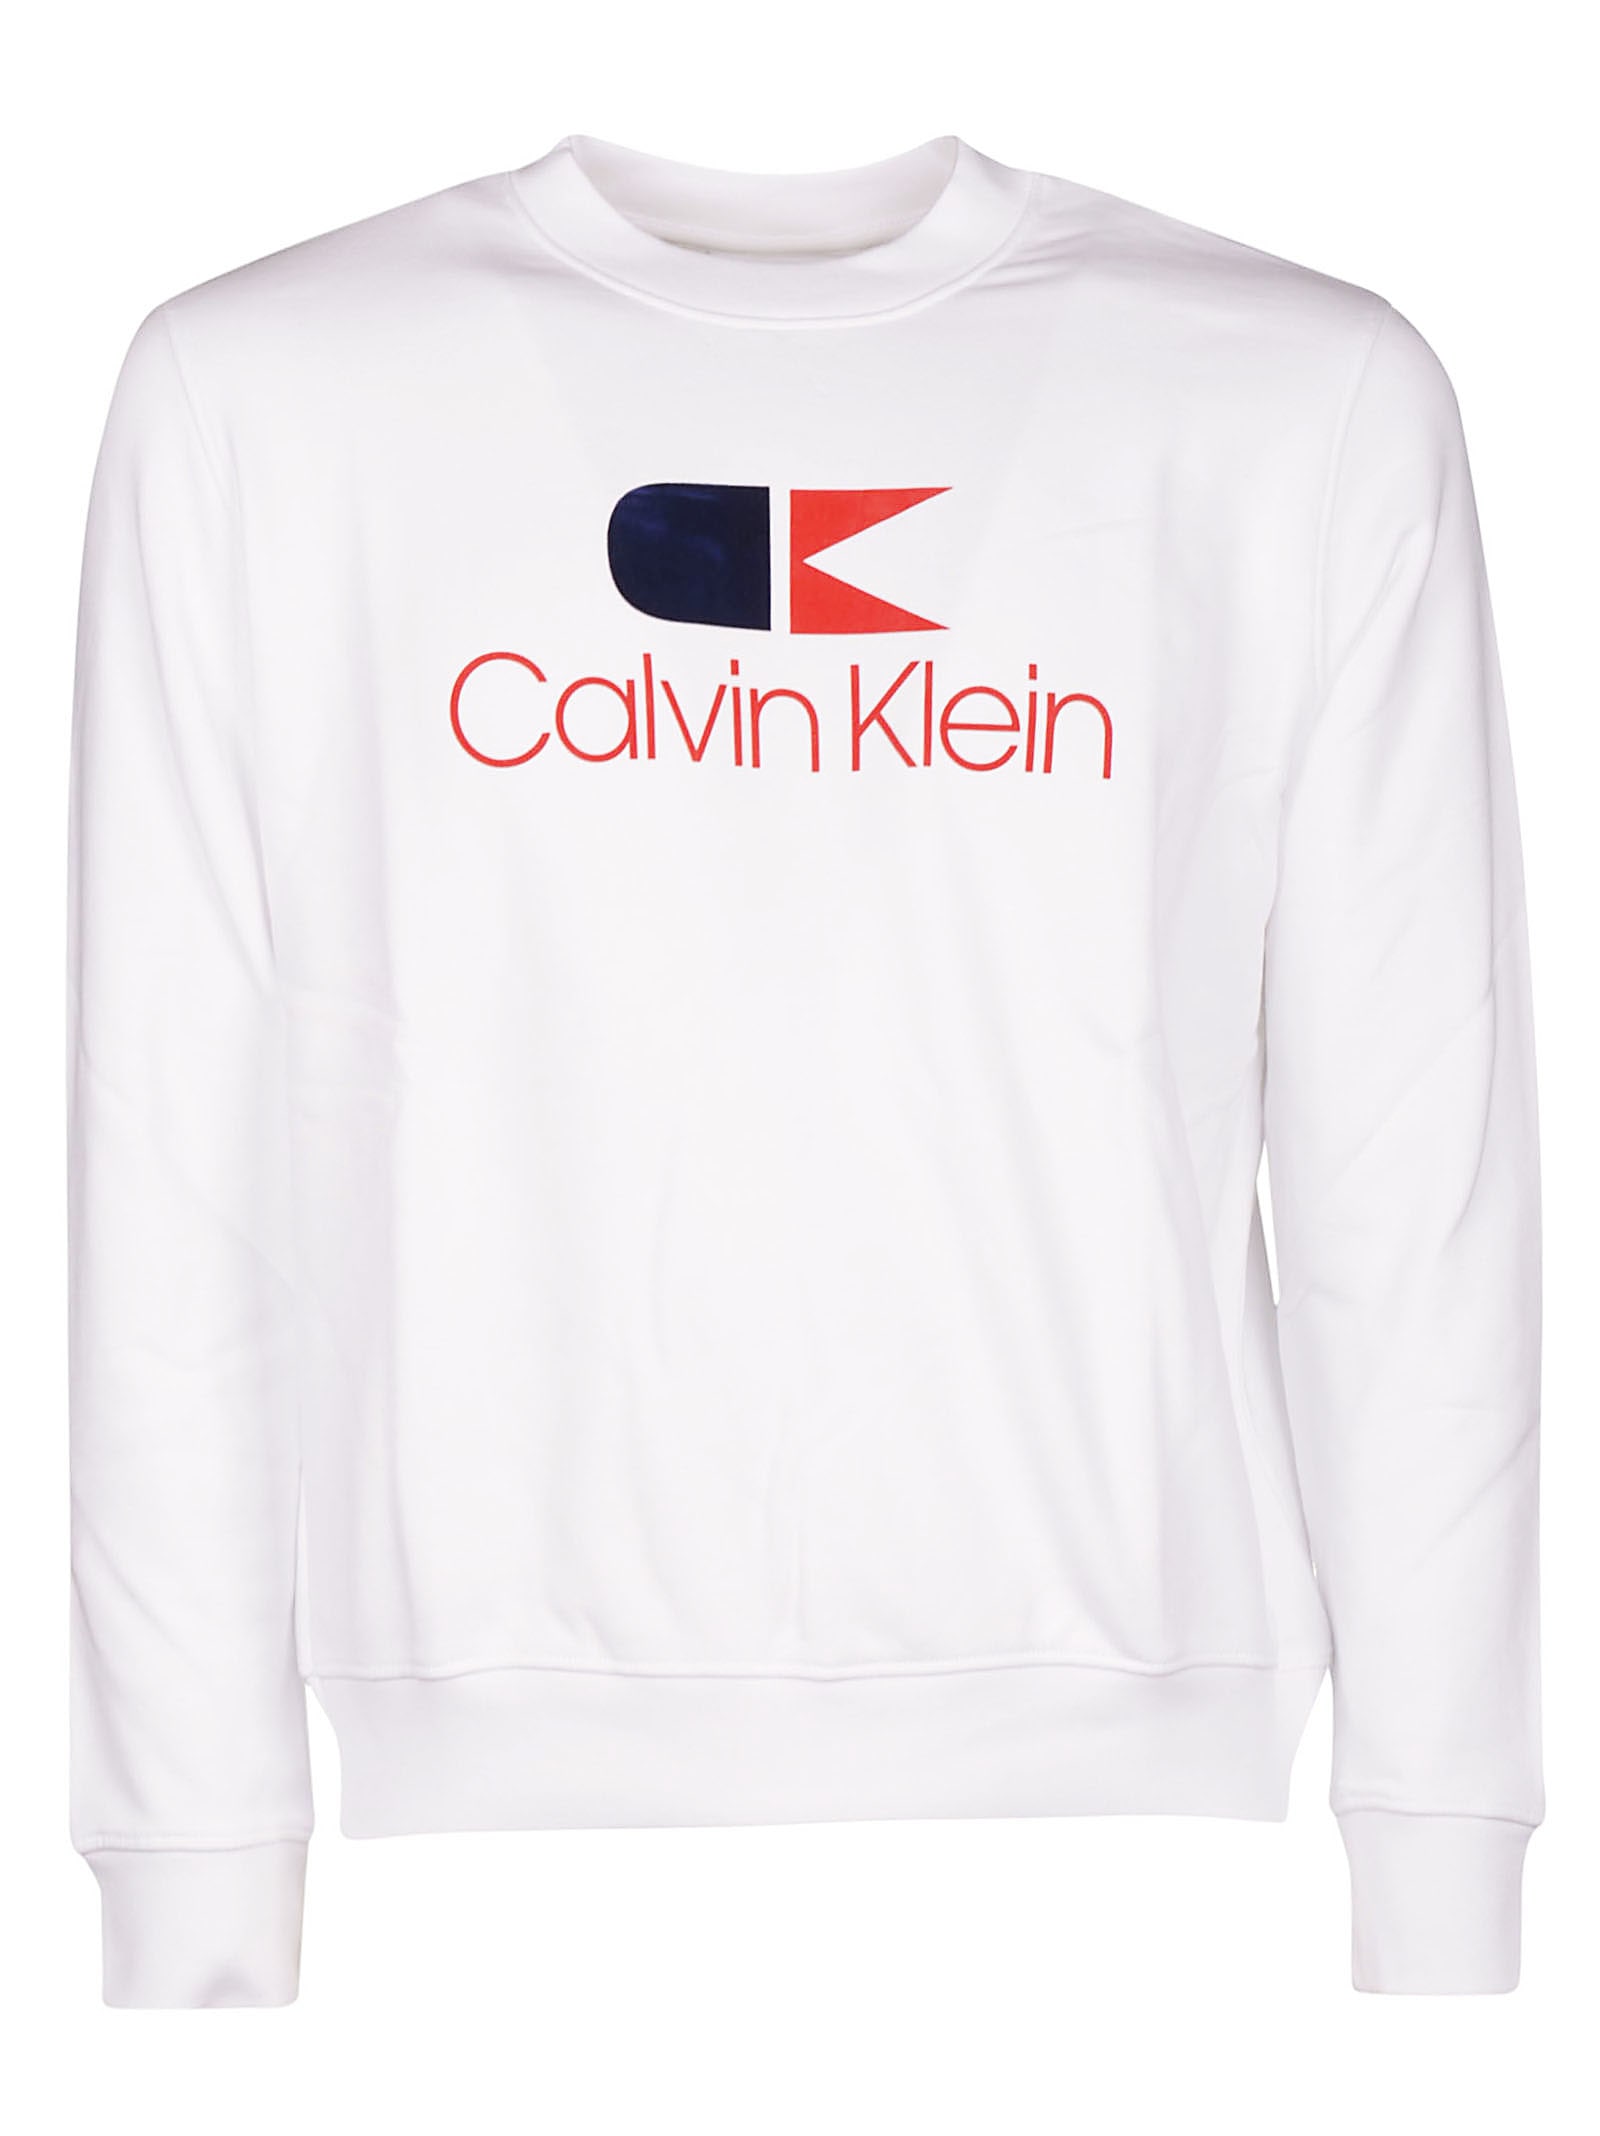 calvin klein vintage sweatshirt